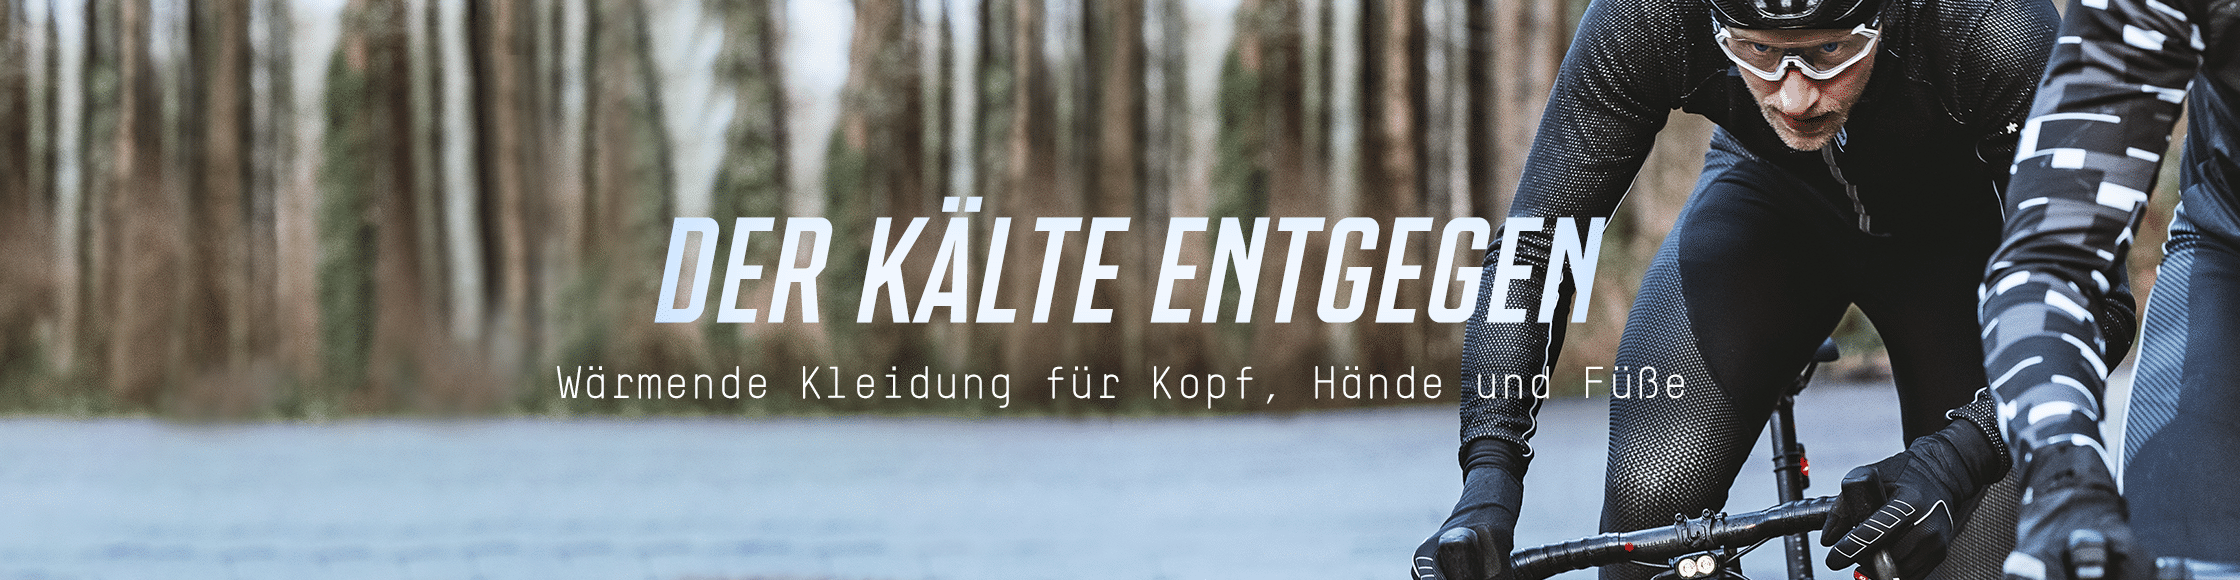 KalteFinger_OHNE_XL Header_01_DE.png